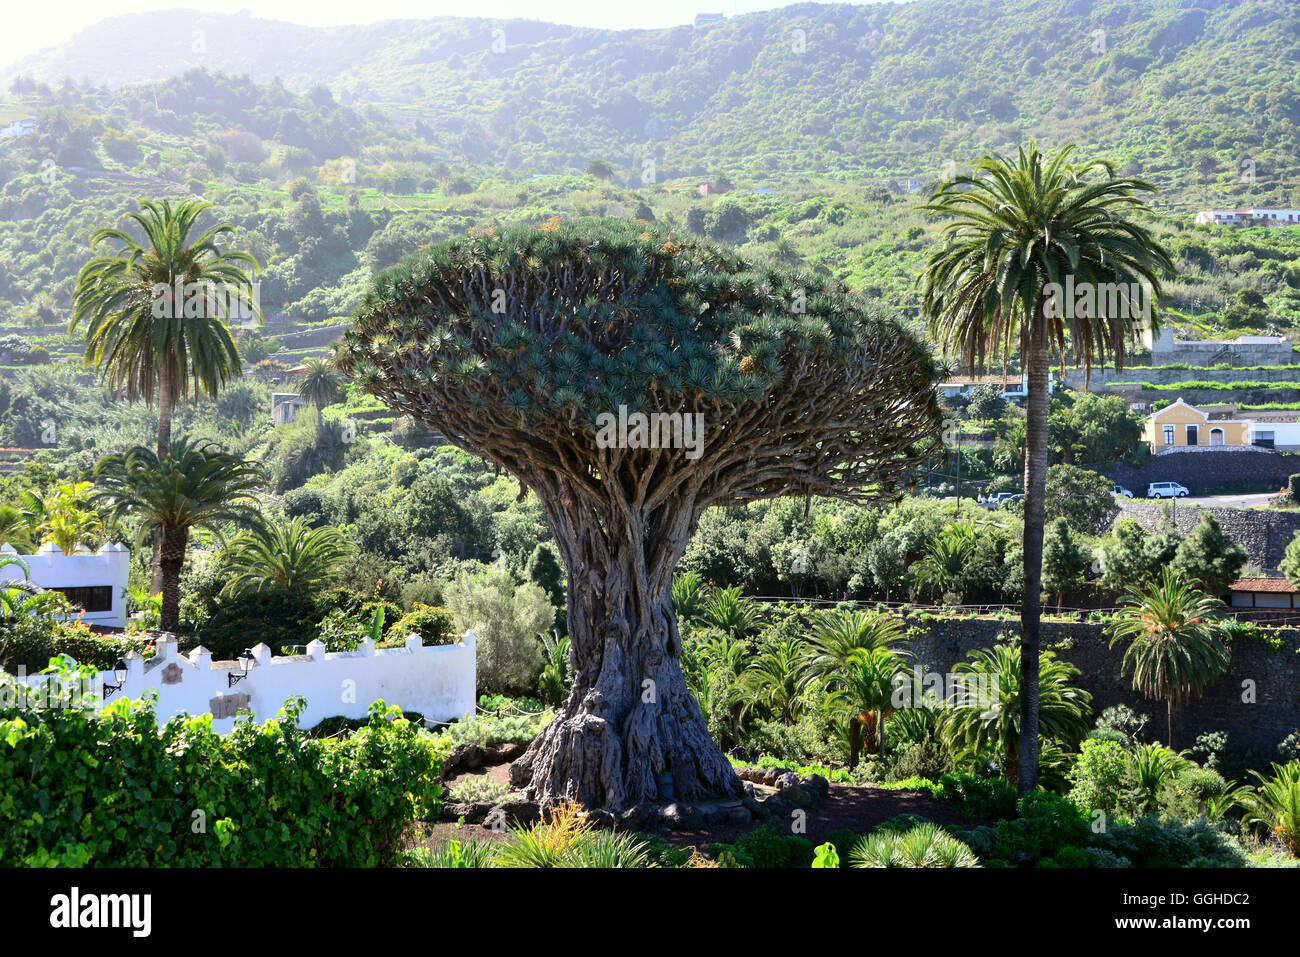 Drachenbaum Drago Milenario, Icod de Los Vinos, Teneriffa, Kanarische Inseln, Spanien Stockfoto